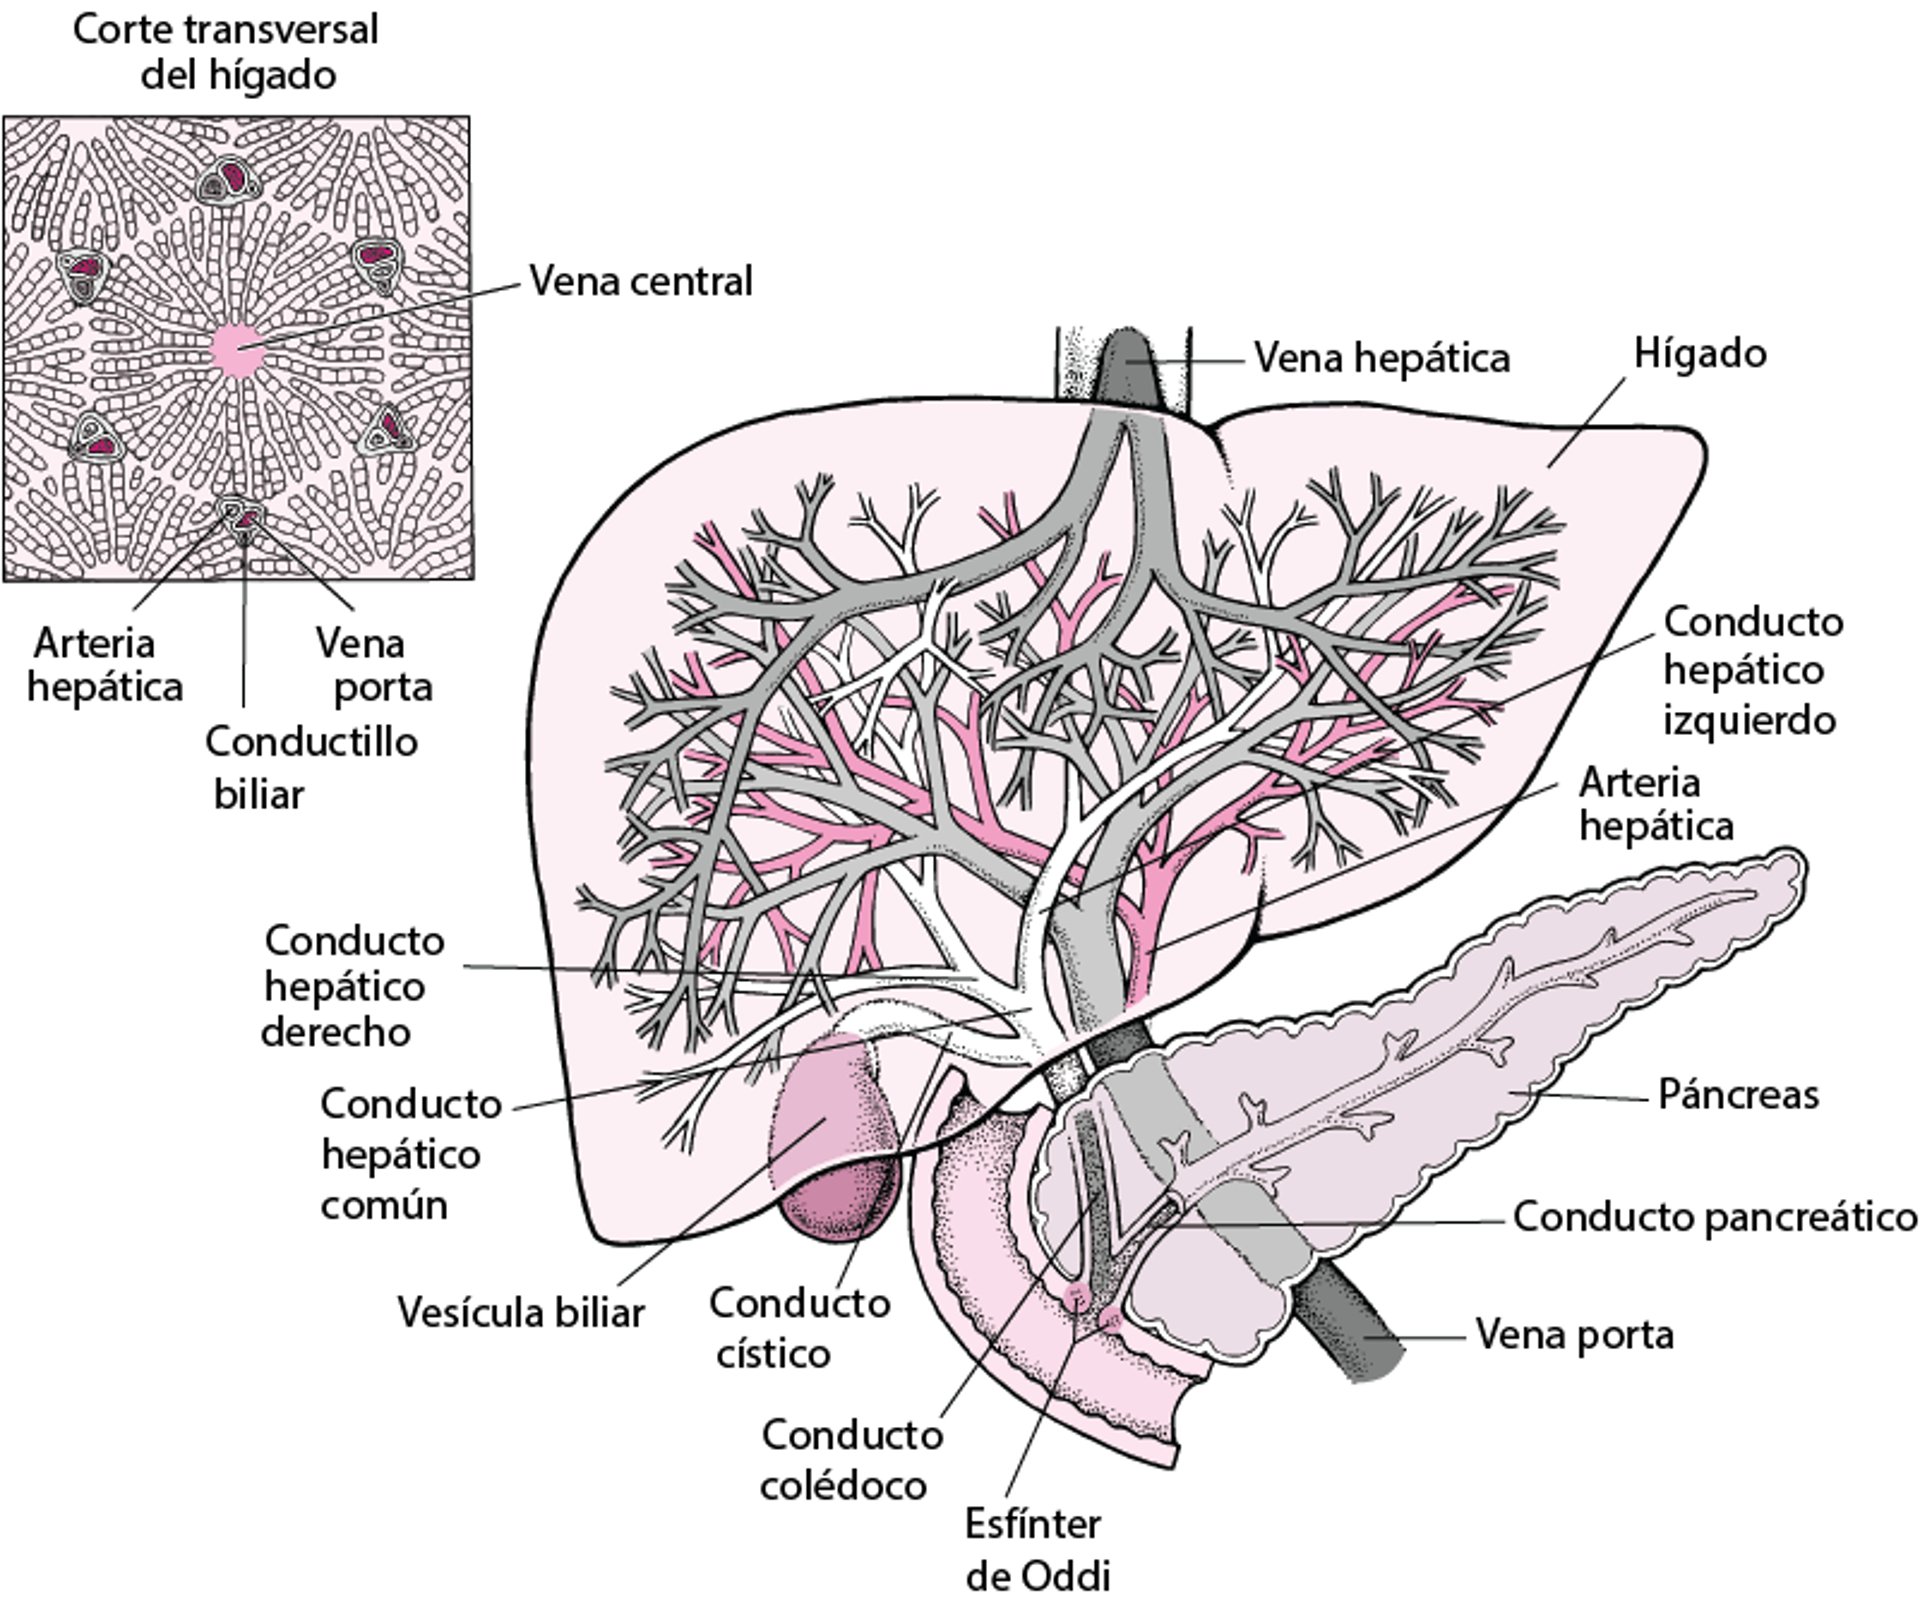 El hígado y la vesícula biliar